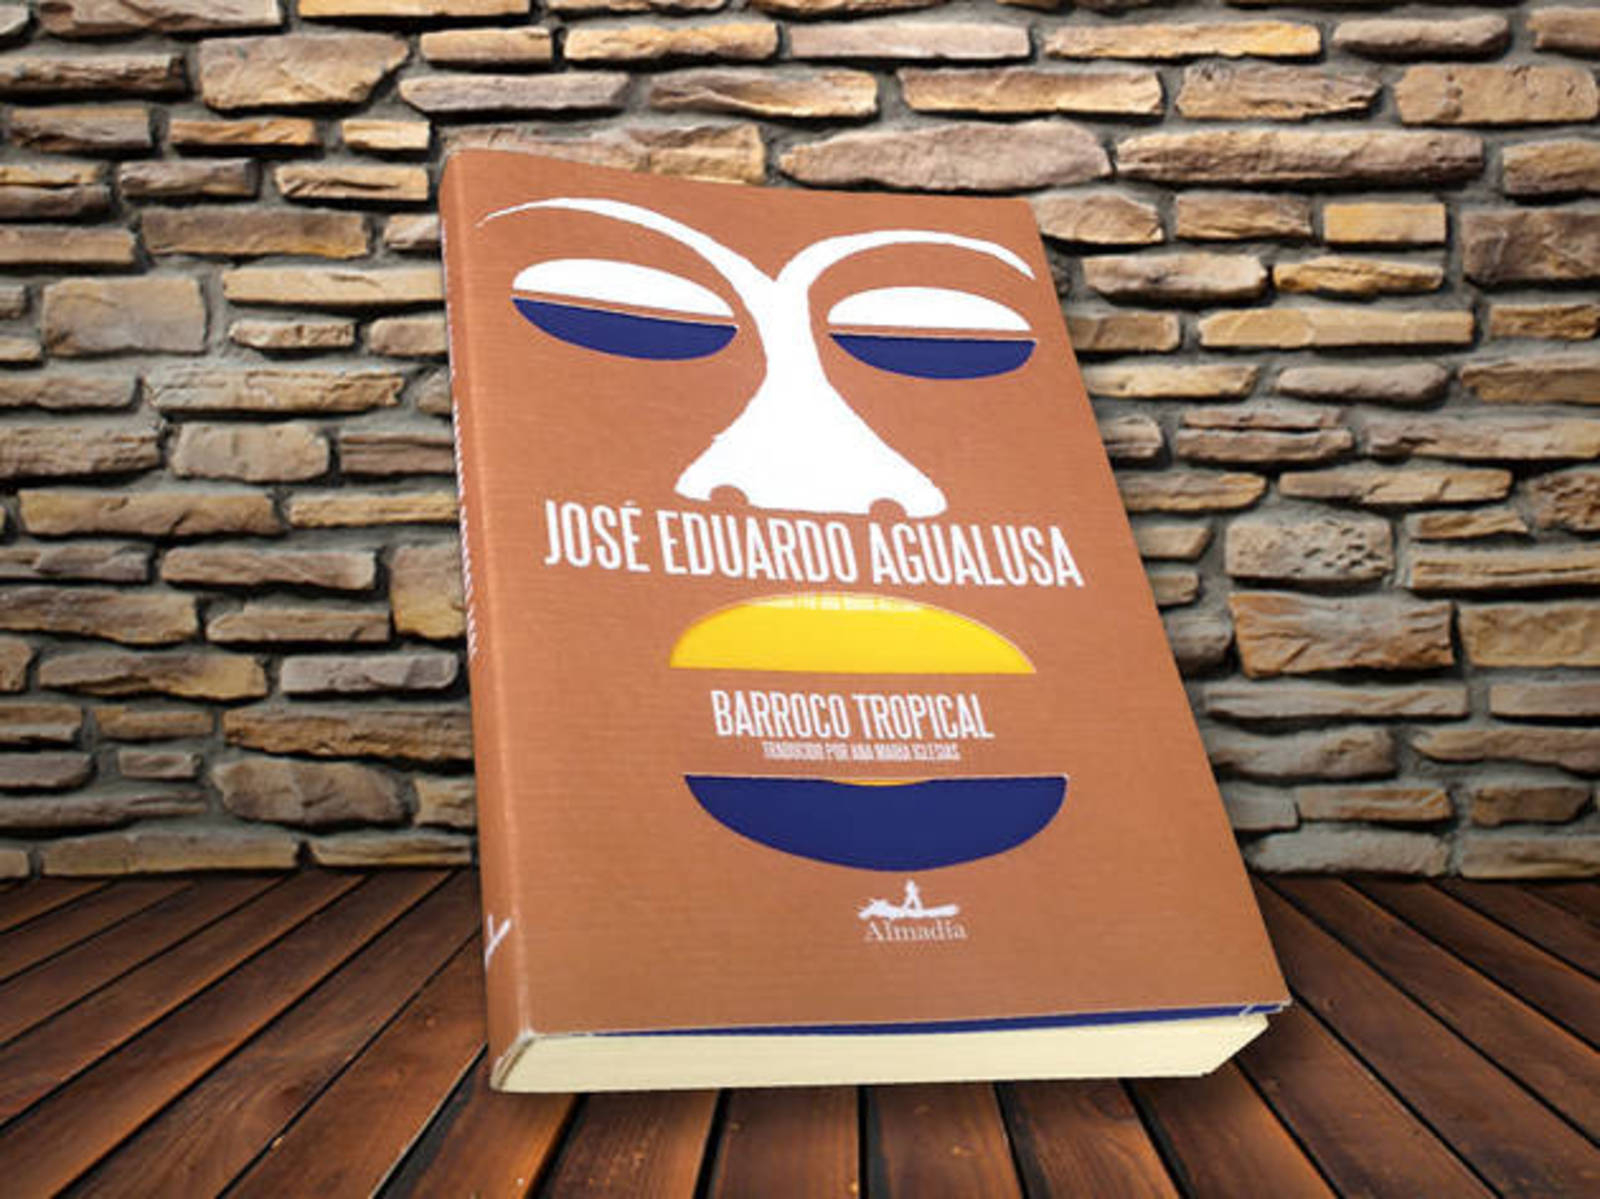 Personaje. El escritor angoleño José Eduardo Agualusa, uno de los más reconocidos escritores de la llamada 'Nueva literatura africana', presentó su más reciente obra 'Barroco Tropical', en México. (CORTESÍA)